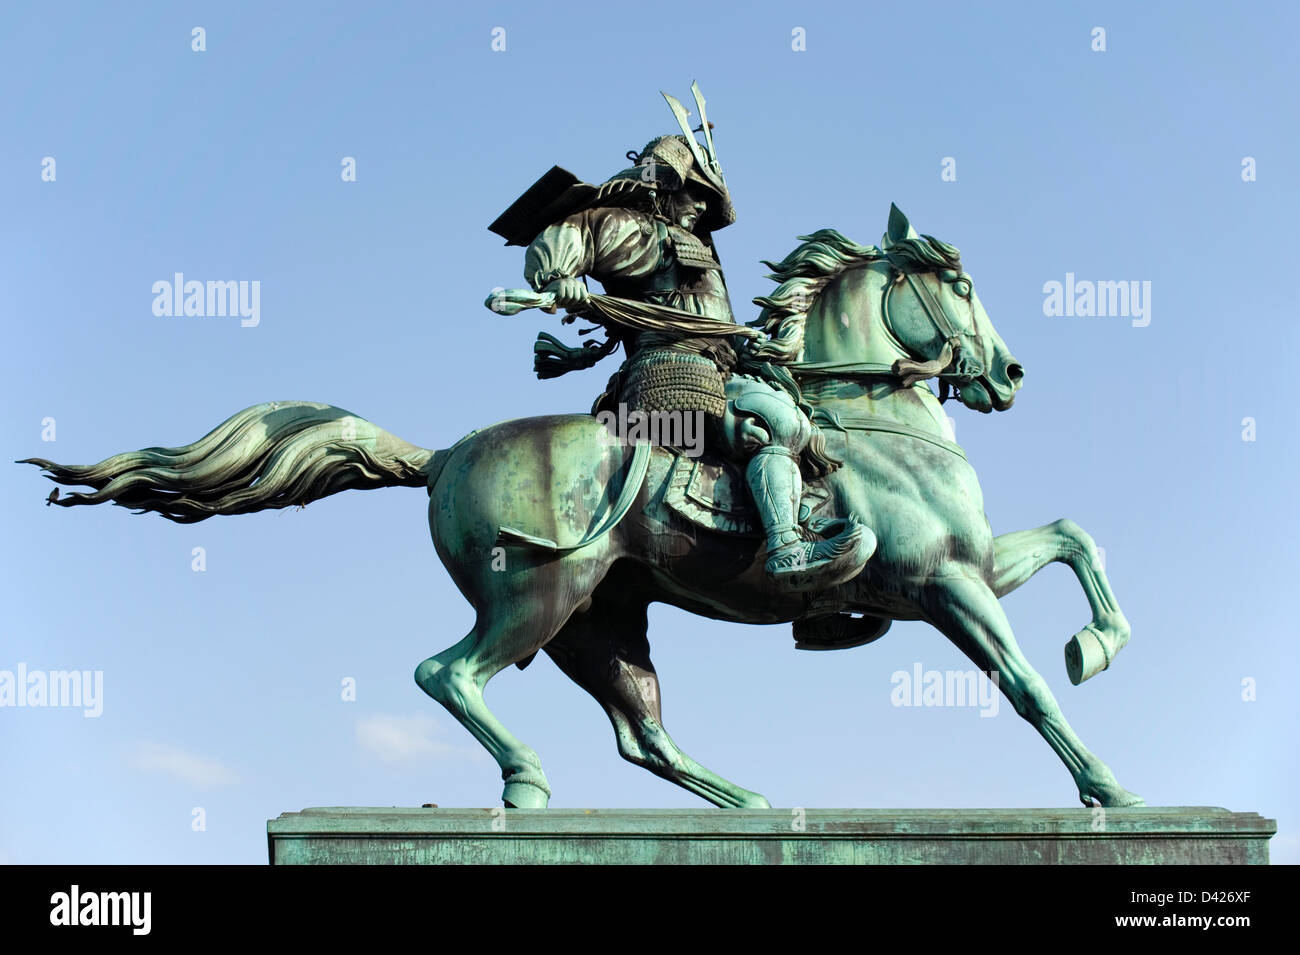 Bronzestatue von Masashige Kusunoki, 14. Jahrhundert Samurai-Krieger zu Pferd im Kokyogaien Park in der Nähe von Imperial Palace, Tokio. Stockfoto